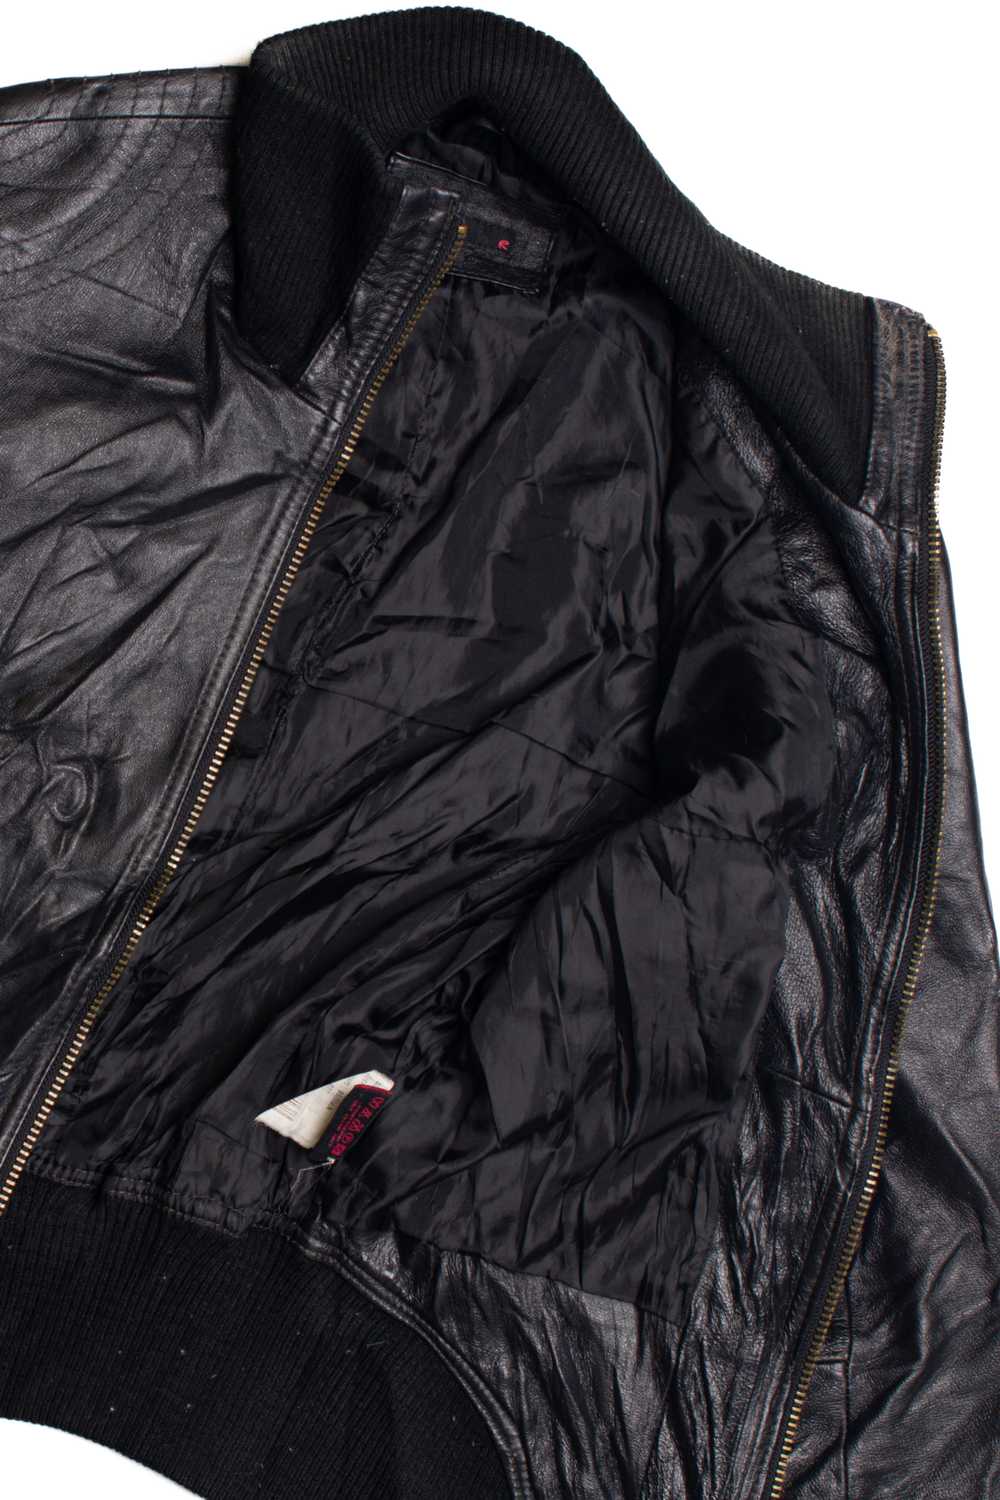 Black Leather Motorcycle Jacket 374 - image 3